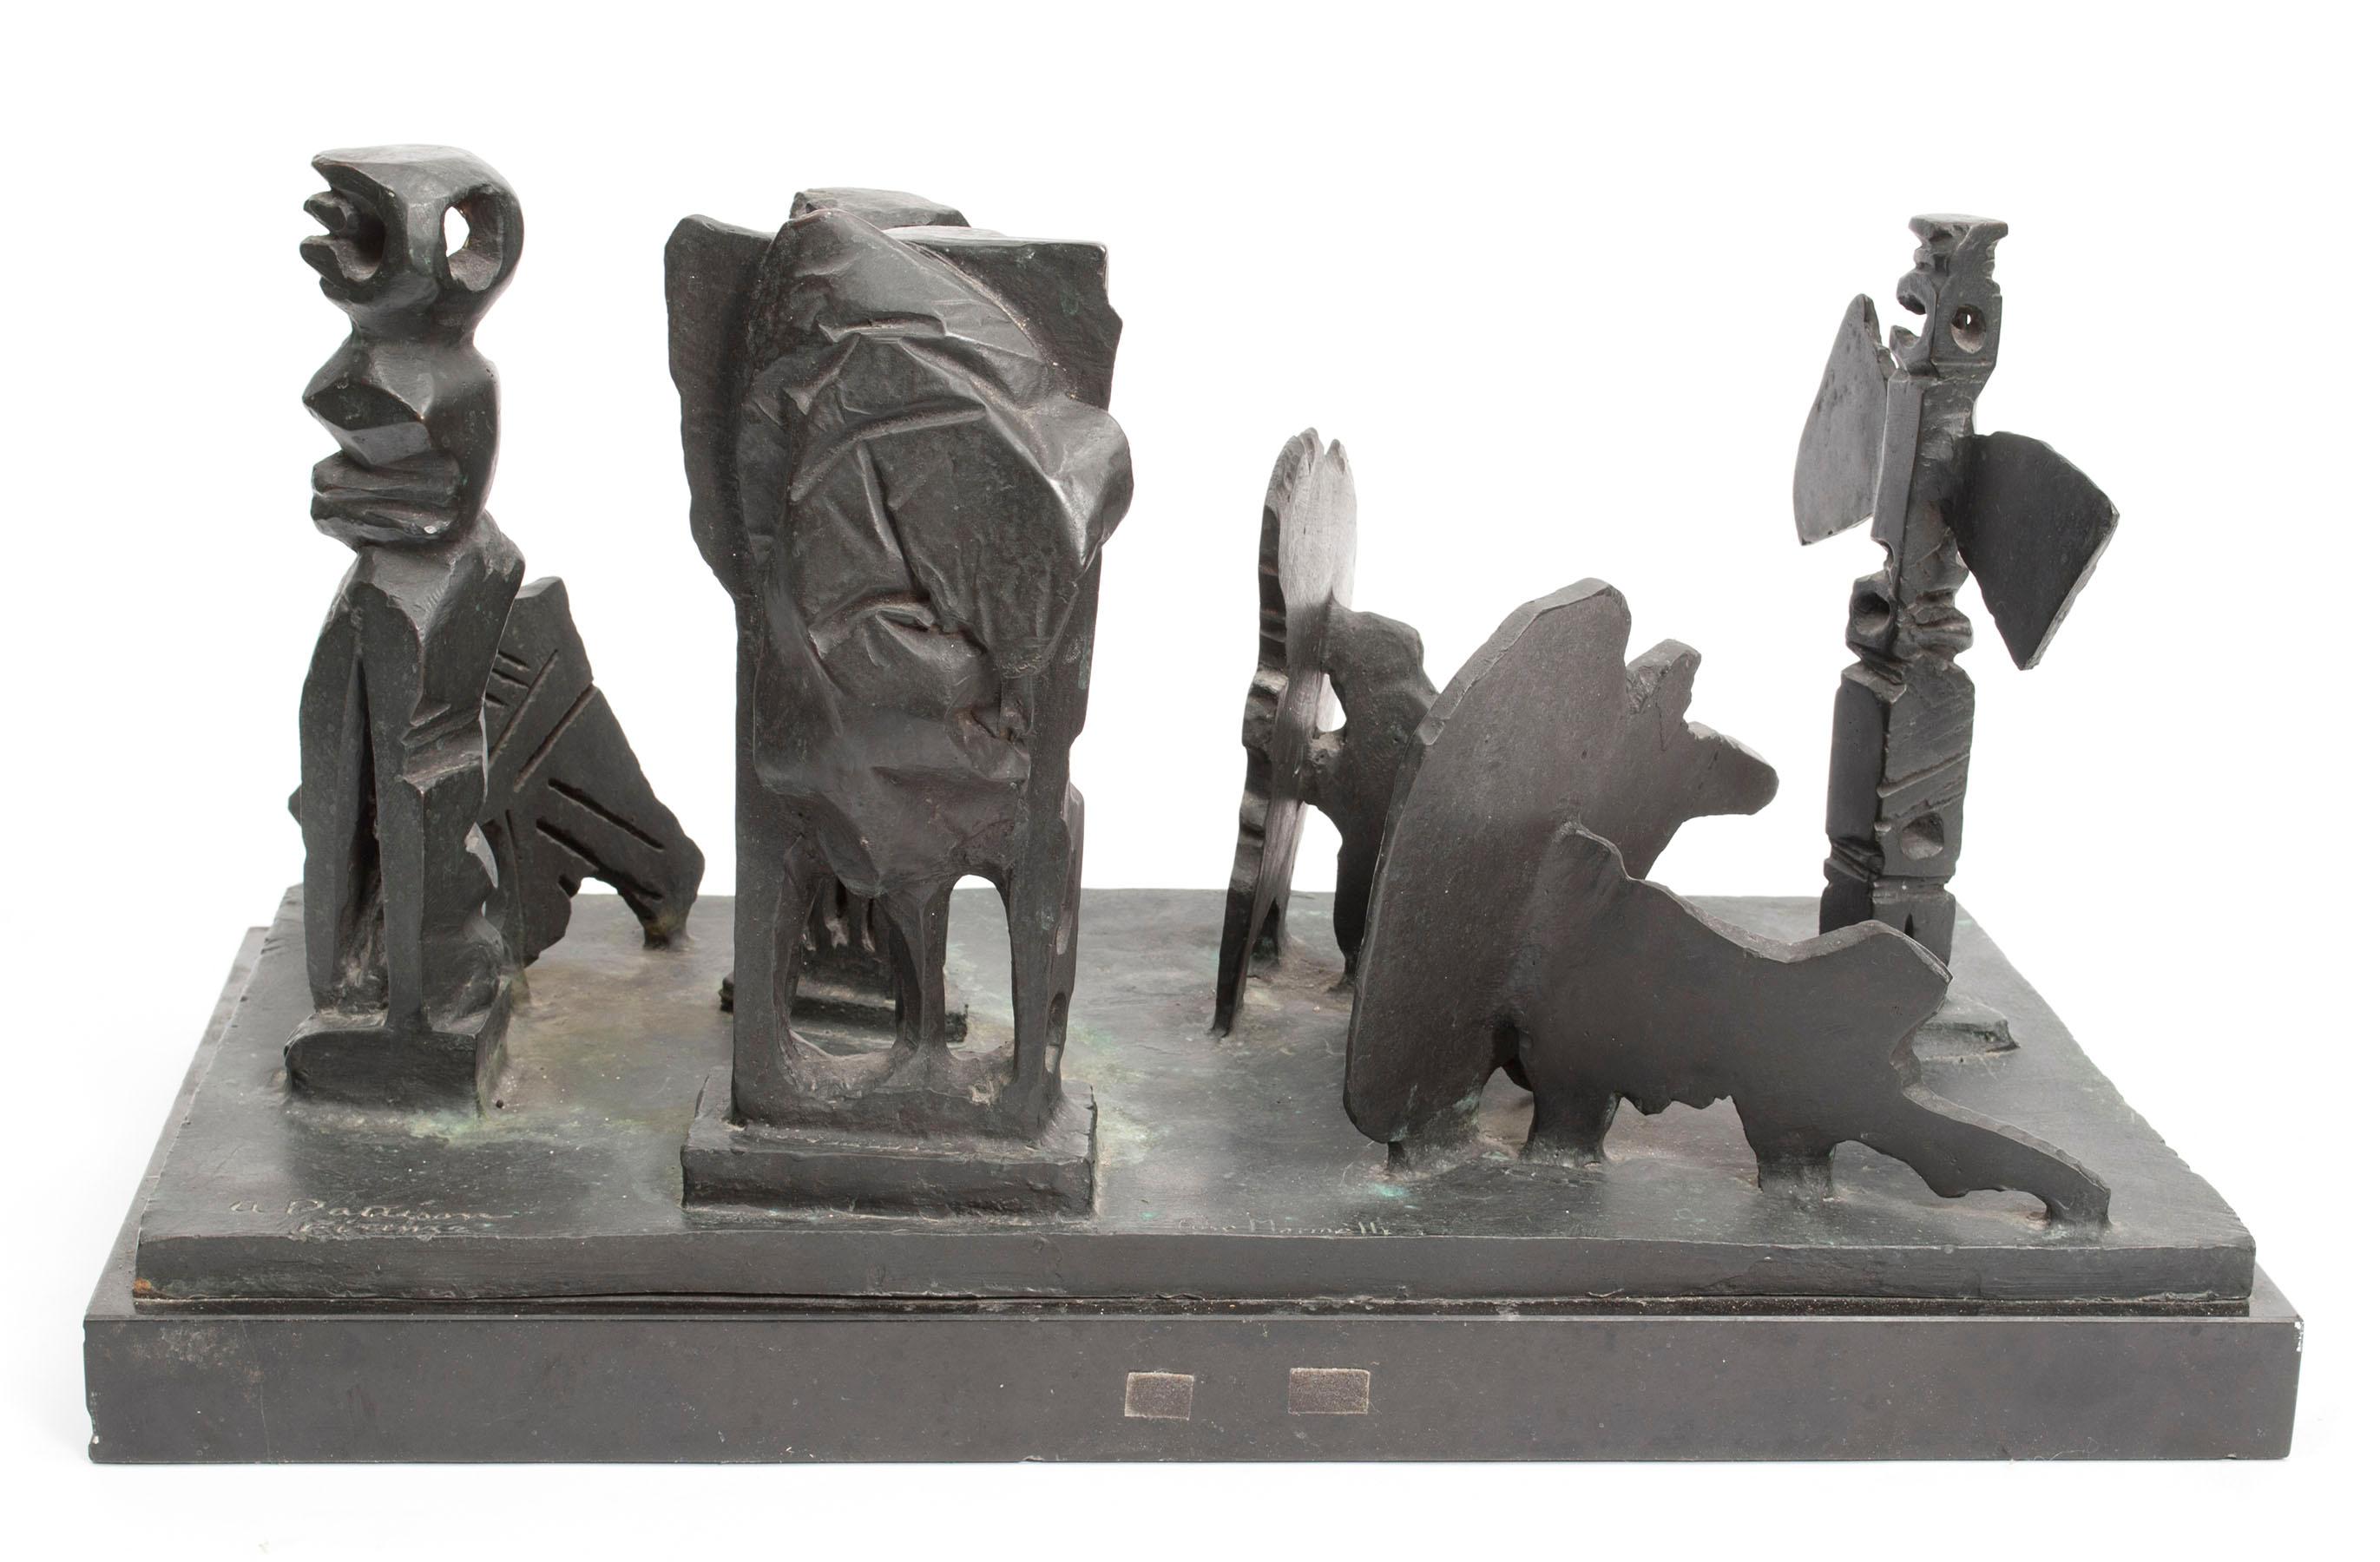 Abstrakte Bronzeskulptur Metropolis im Stil des Brutalismus der Moderne, nach Louise Nevelson – Sculpture von Abbott Pattison